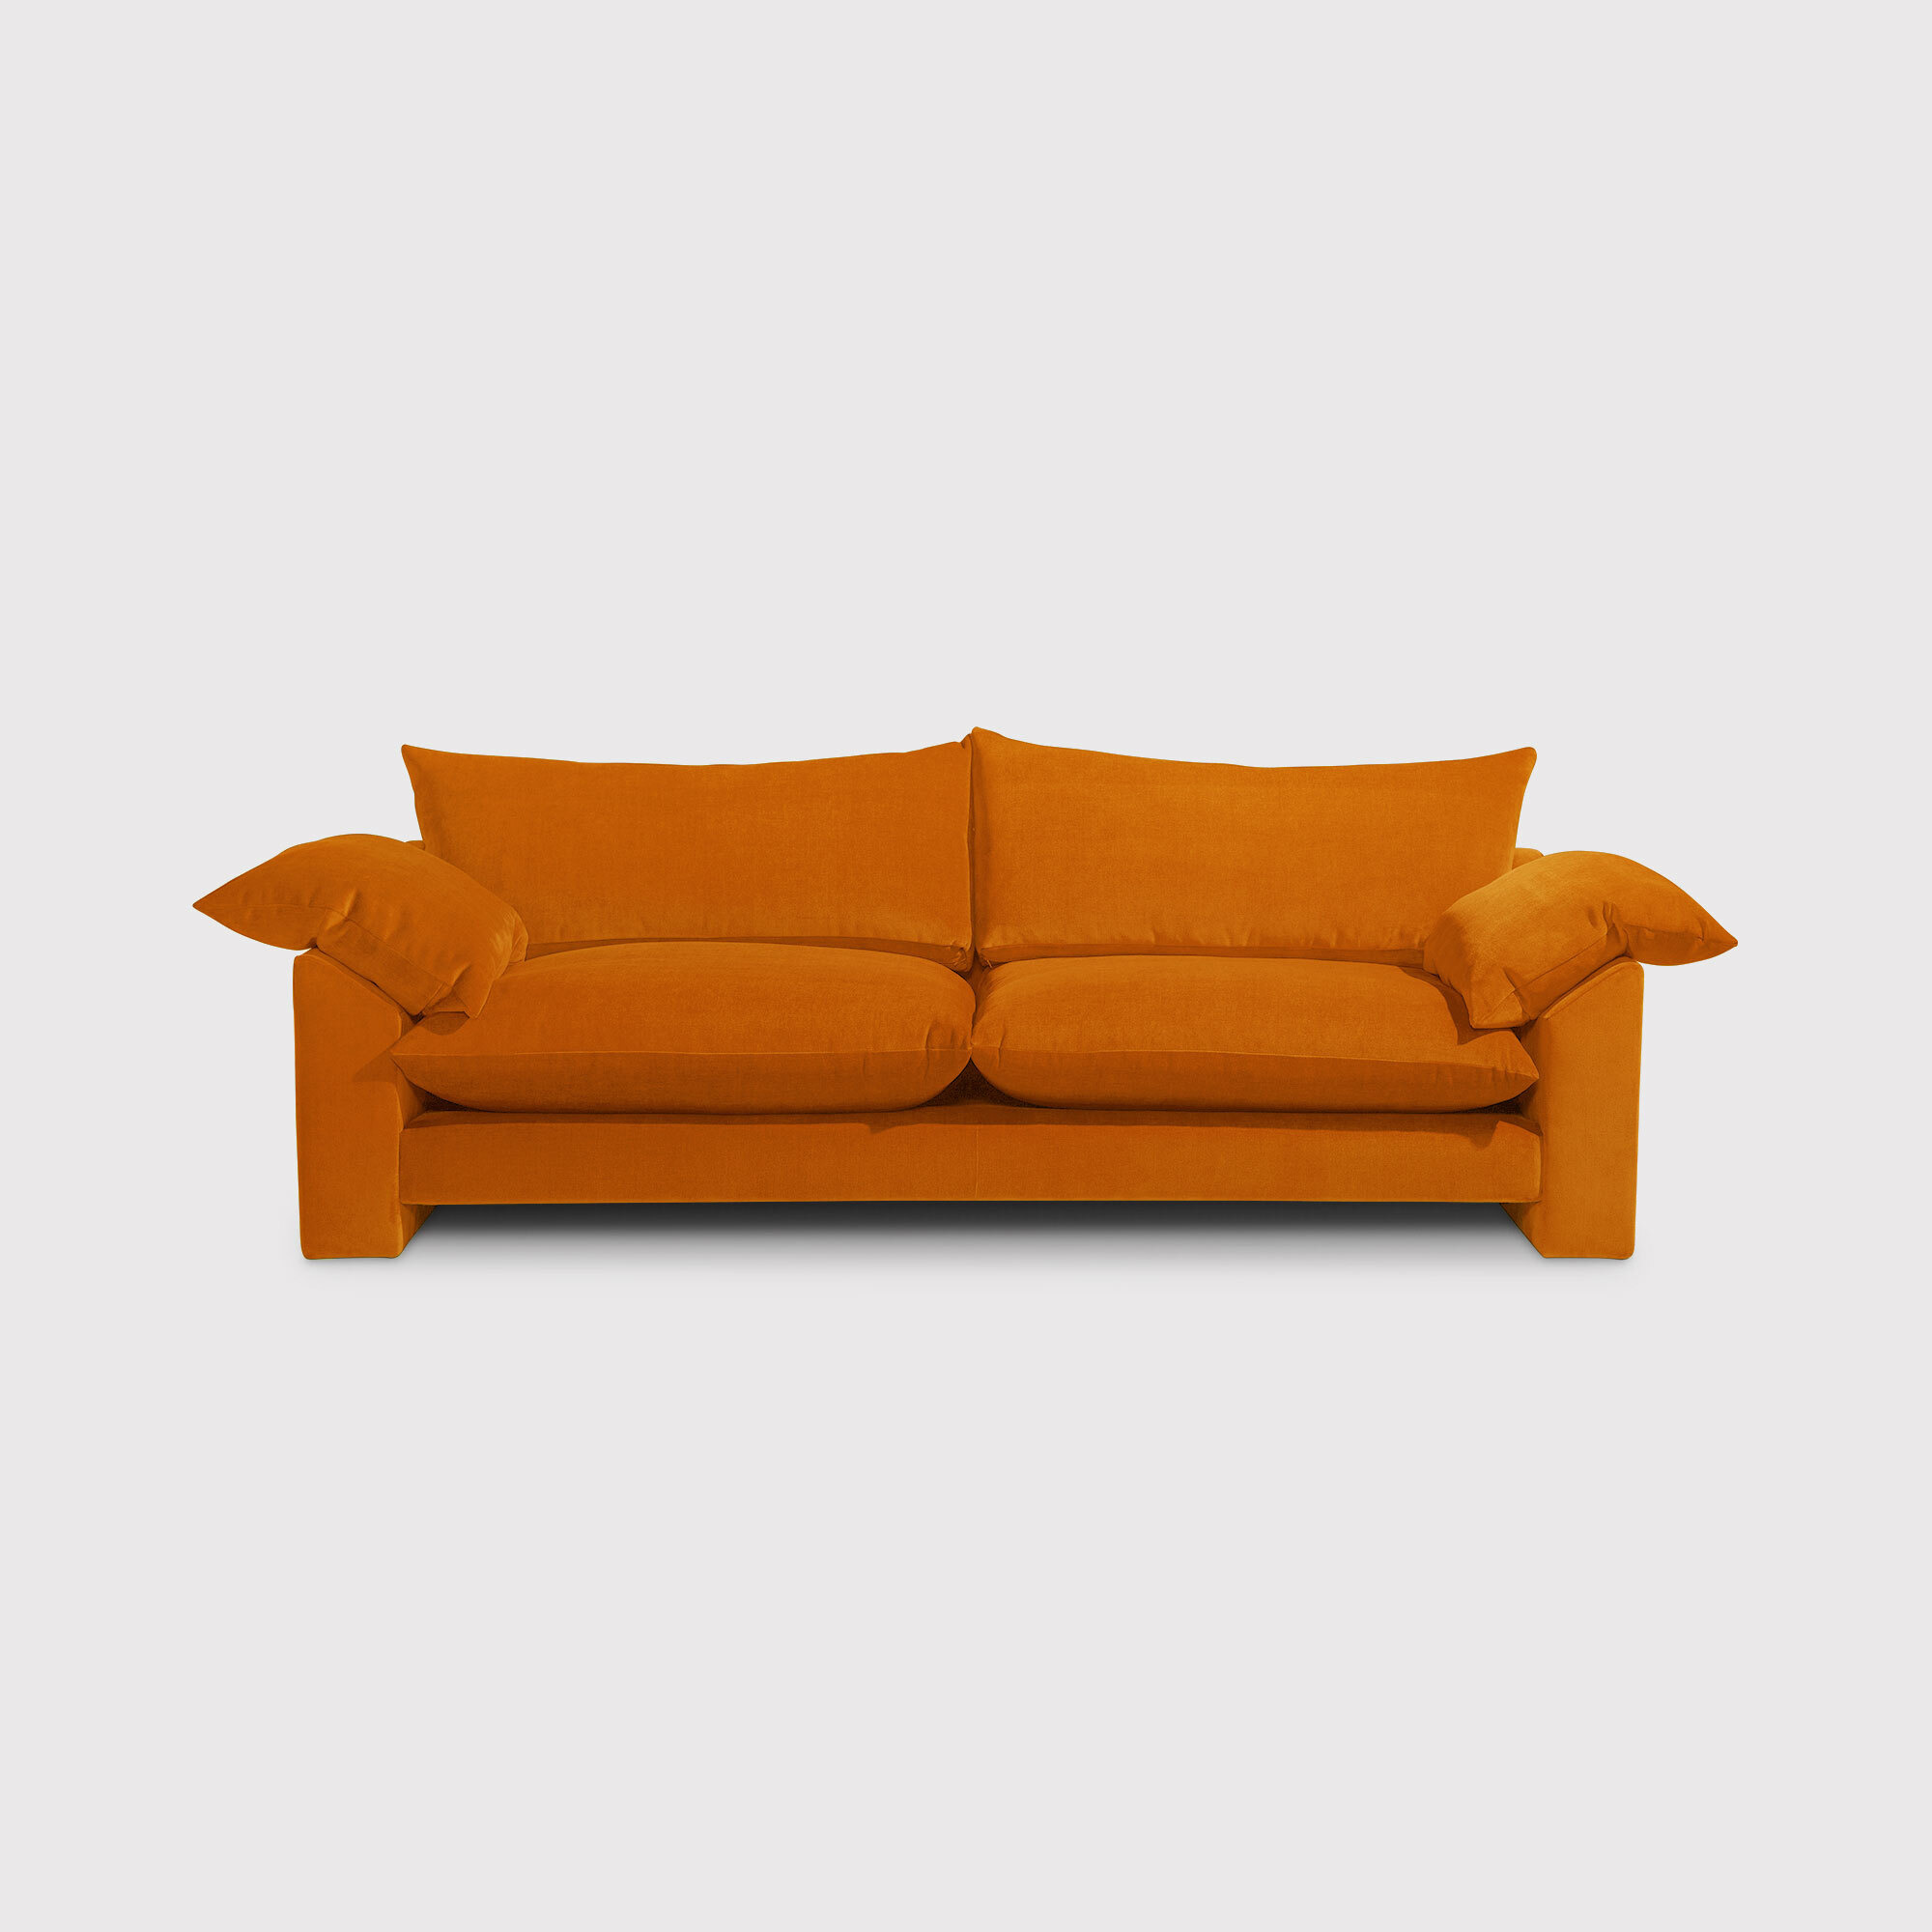 Hoxton Extra Large Sofa, Orange Fabric - Barker & Stonehouse - image 1